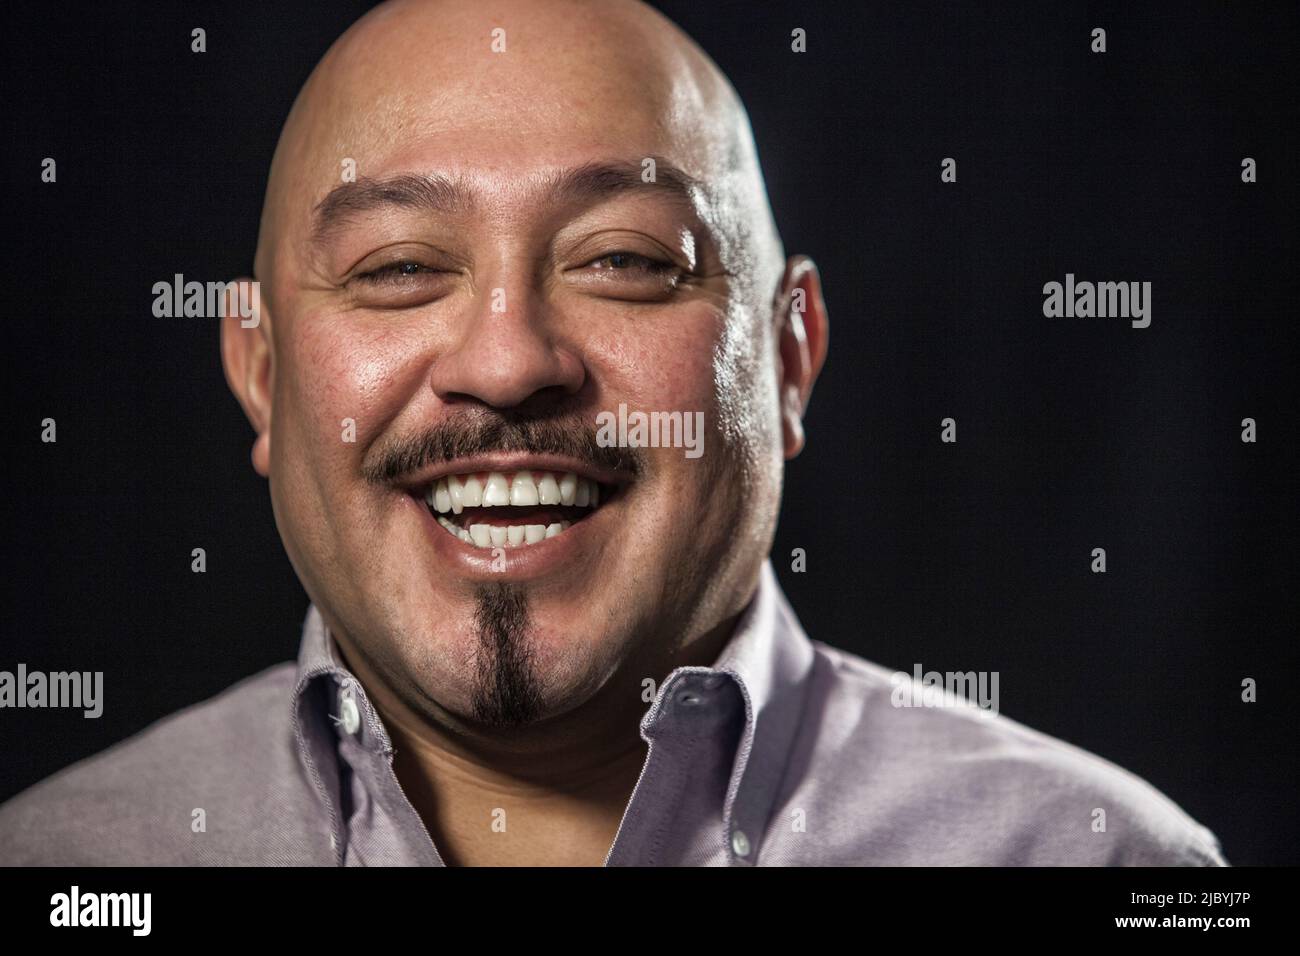 Portrait of smiling man Banque D'Images